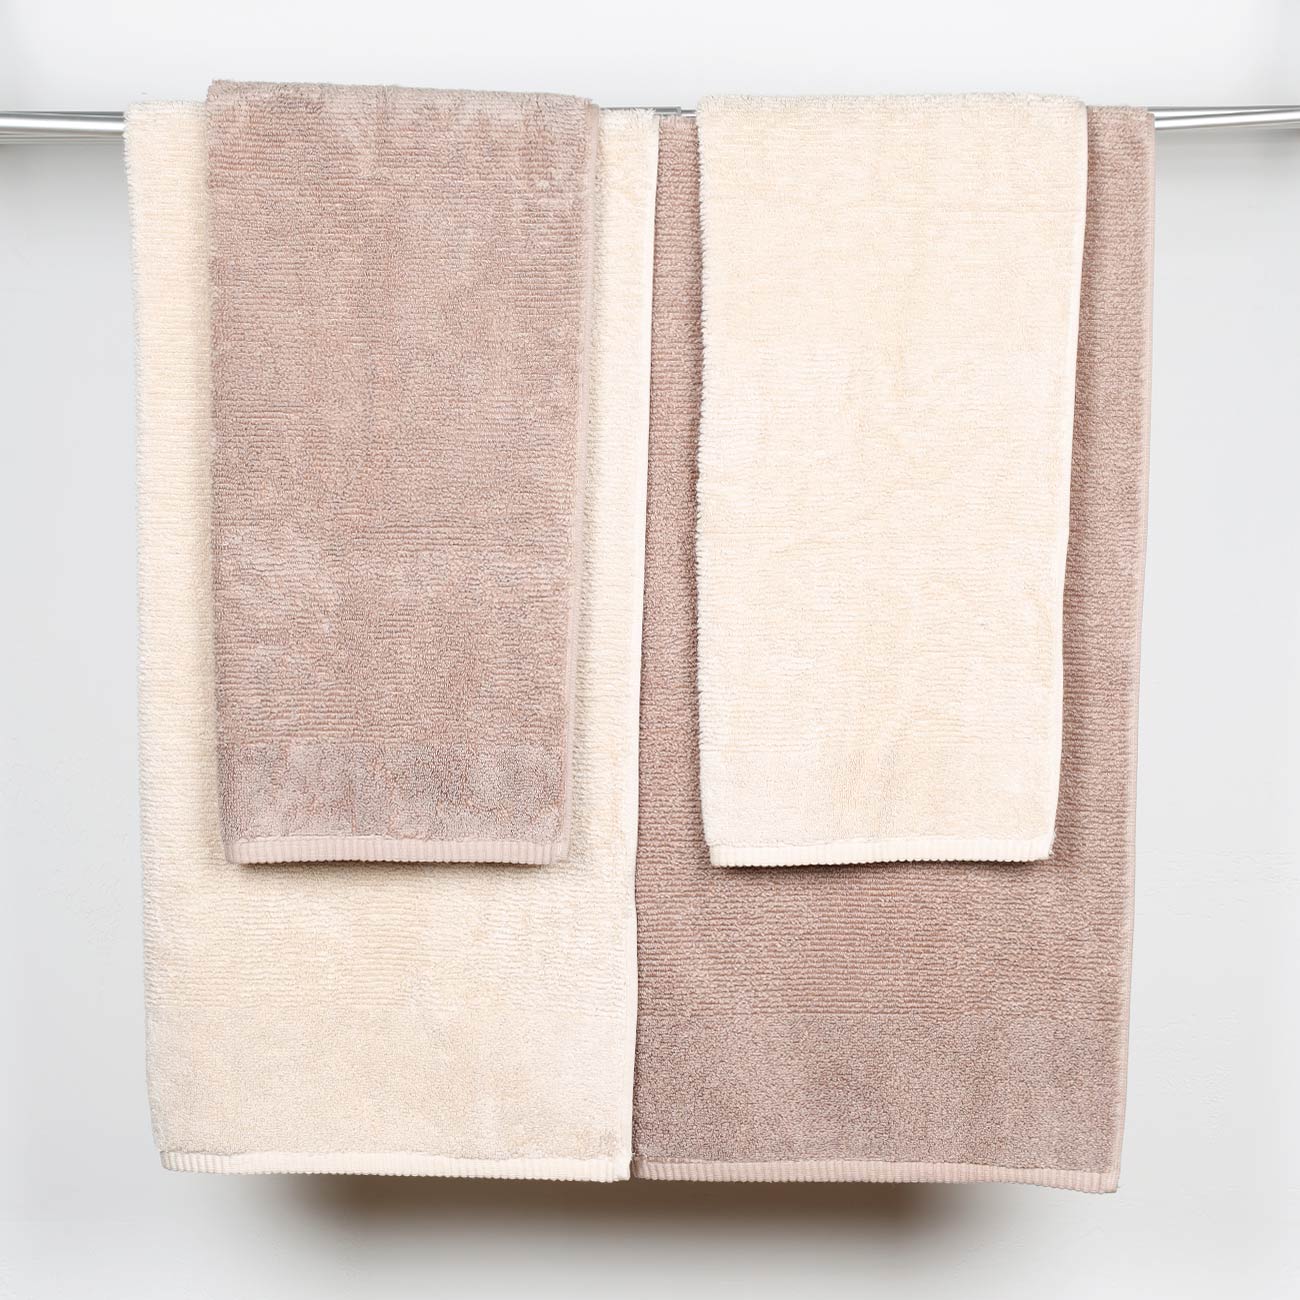 Towel set, 50x90 / 70x140 cm, 4 pcs, cotton, brown / beige, Terry cotton изображение № 2